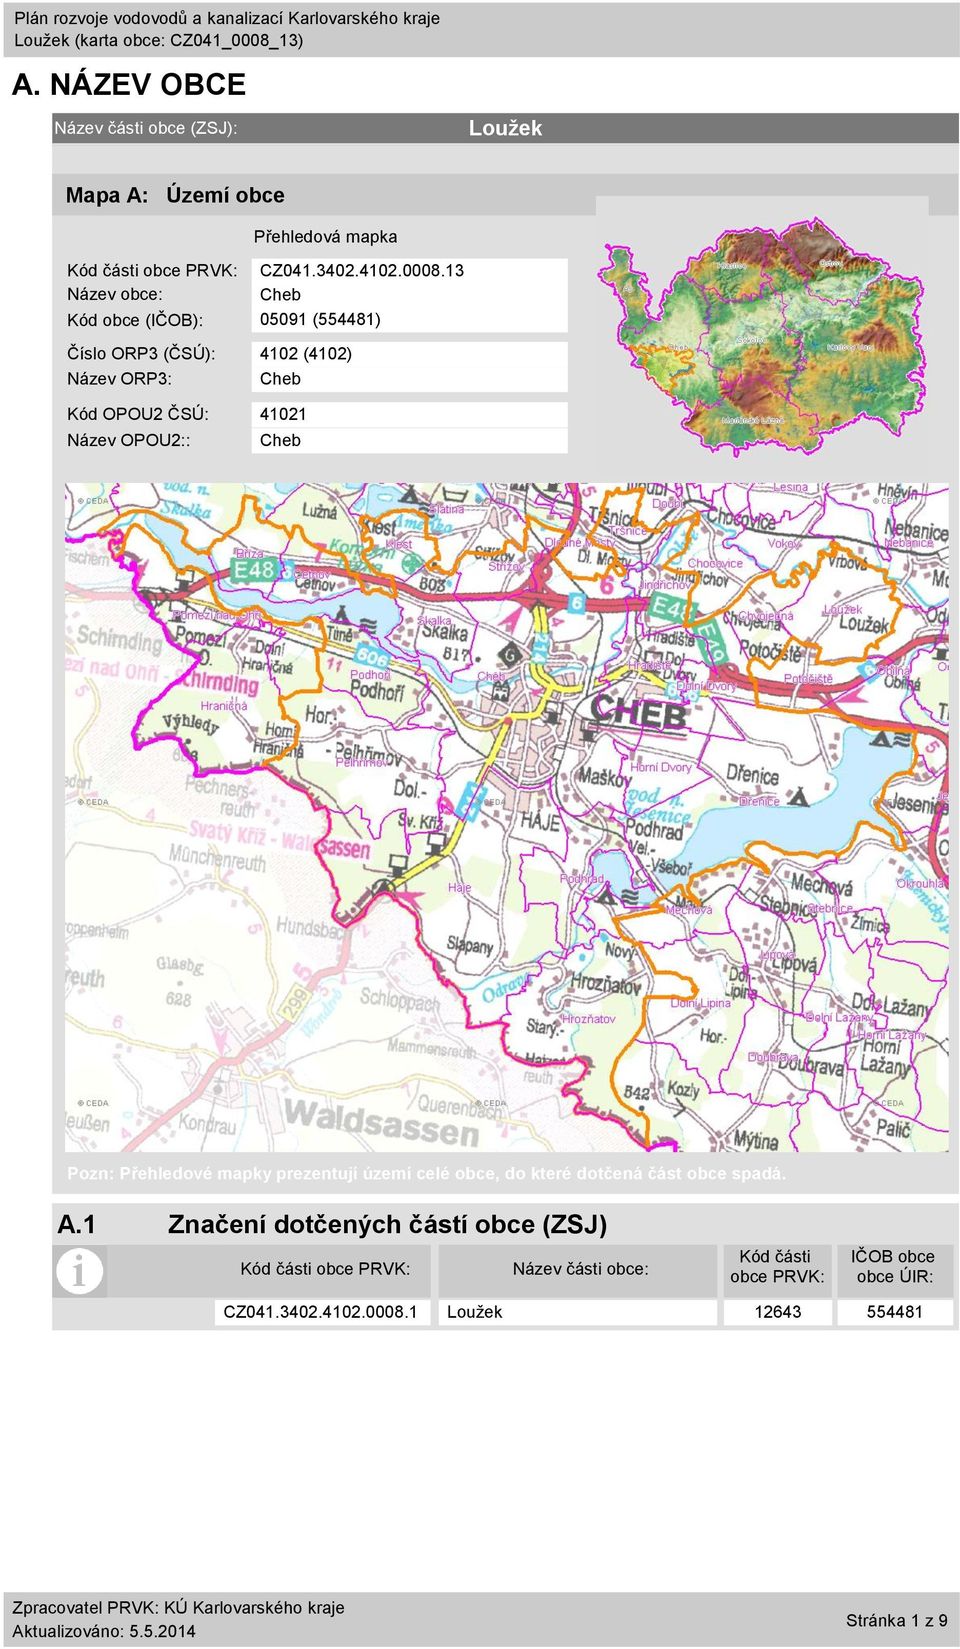 OPOU2:: Cheb Pozn: Přehledové mapky prezentují území celé obce, do které dotčená část obce spadá. A.